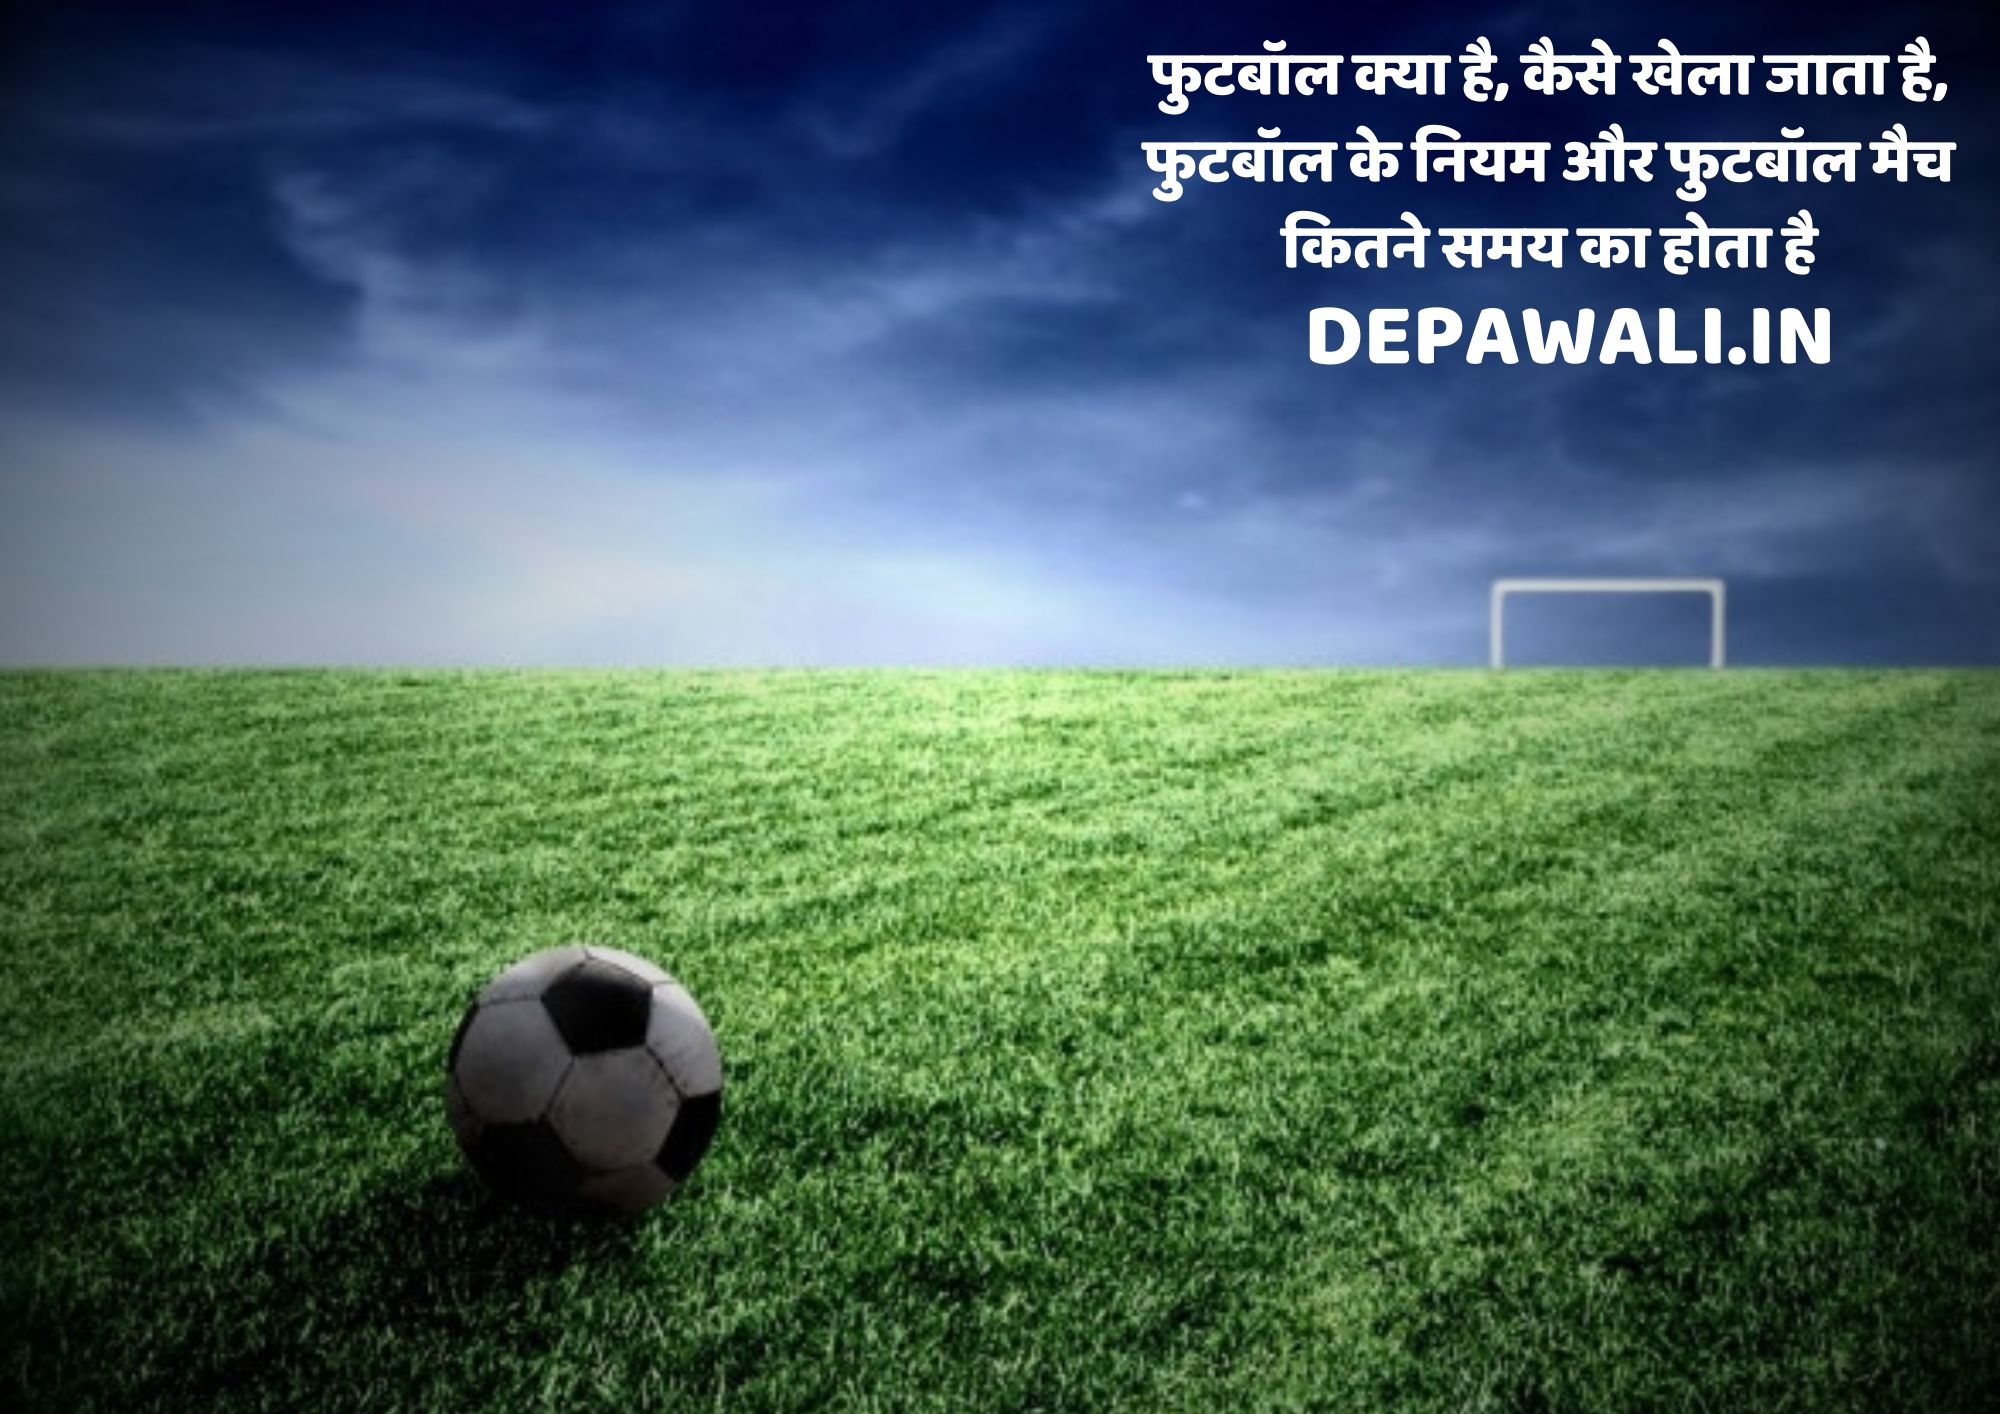 फुटबॉल क्या है, कैसे खेला जाता है, फुटबॉल के नियम और फुटबॉल मैच कितने समय का होता है - Football Rules In Hindi - What Is Football In Hindi Name